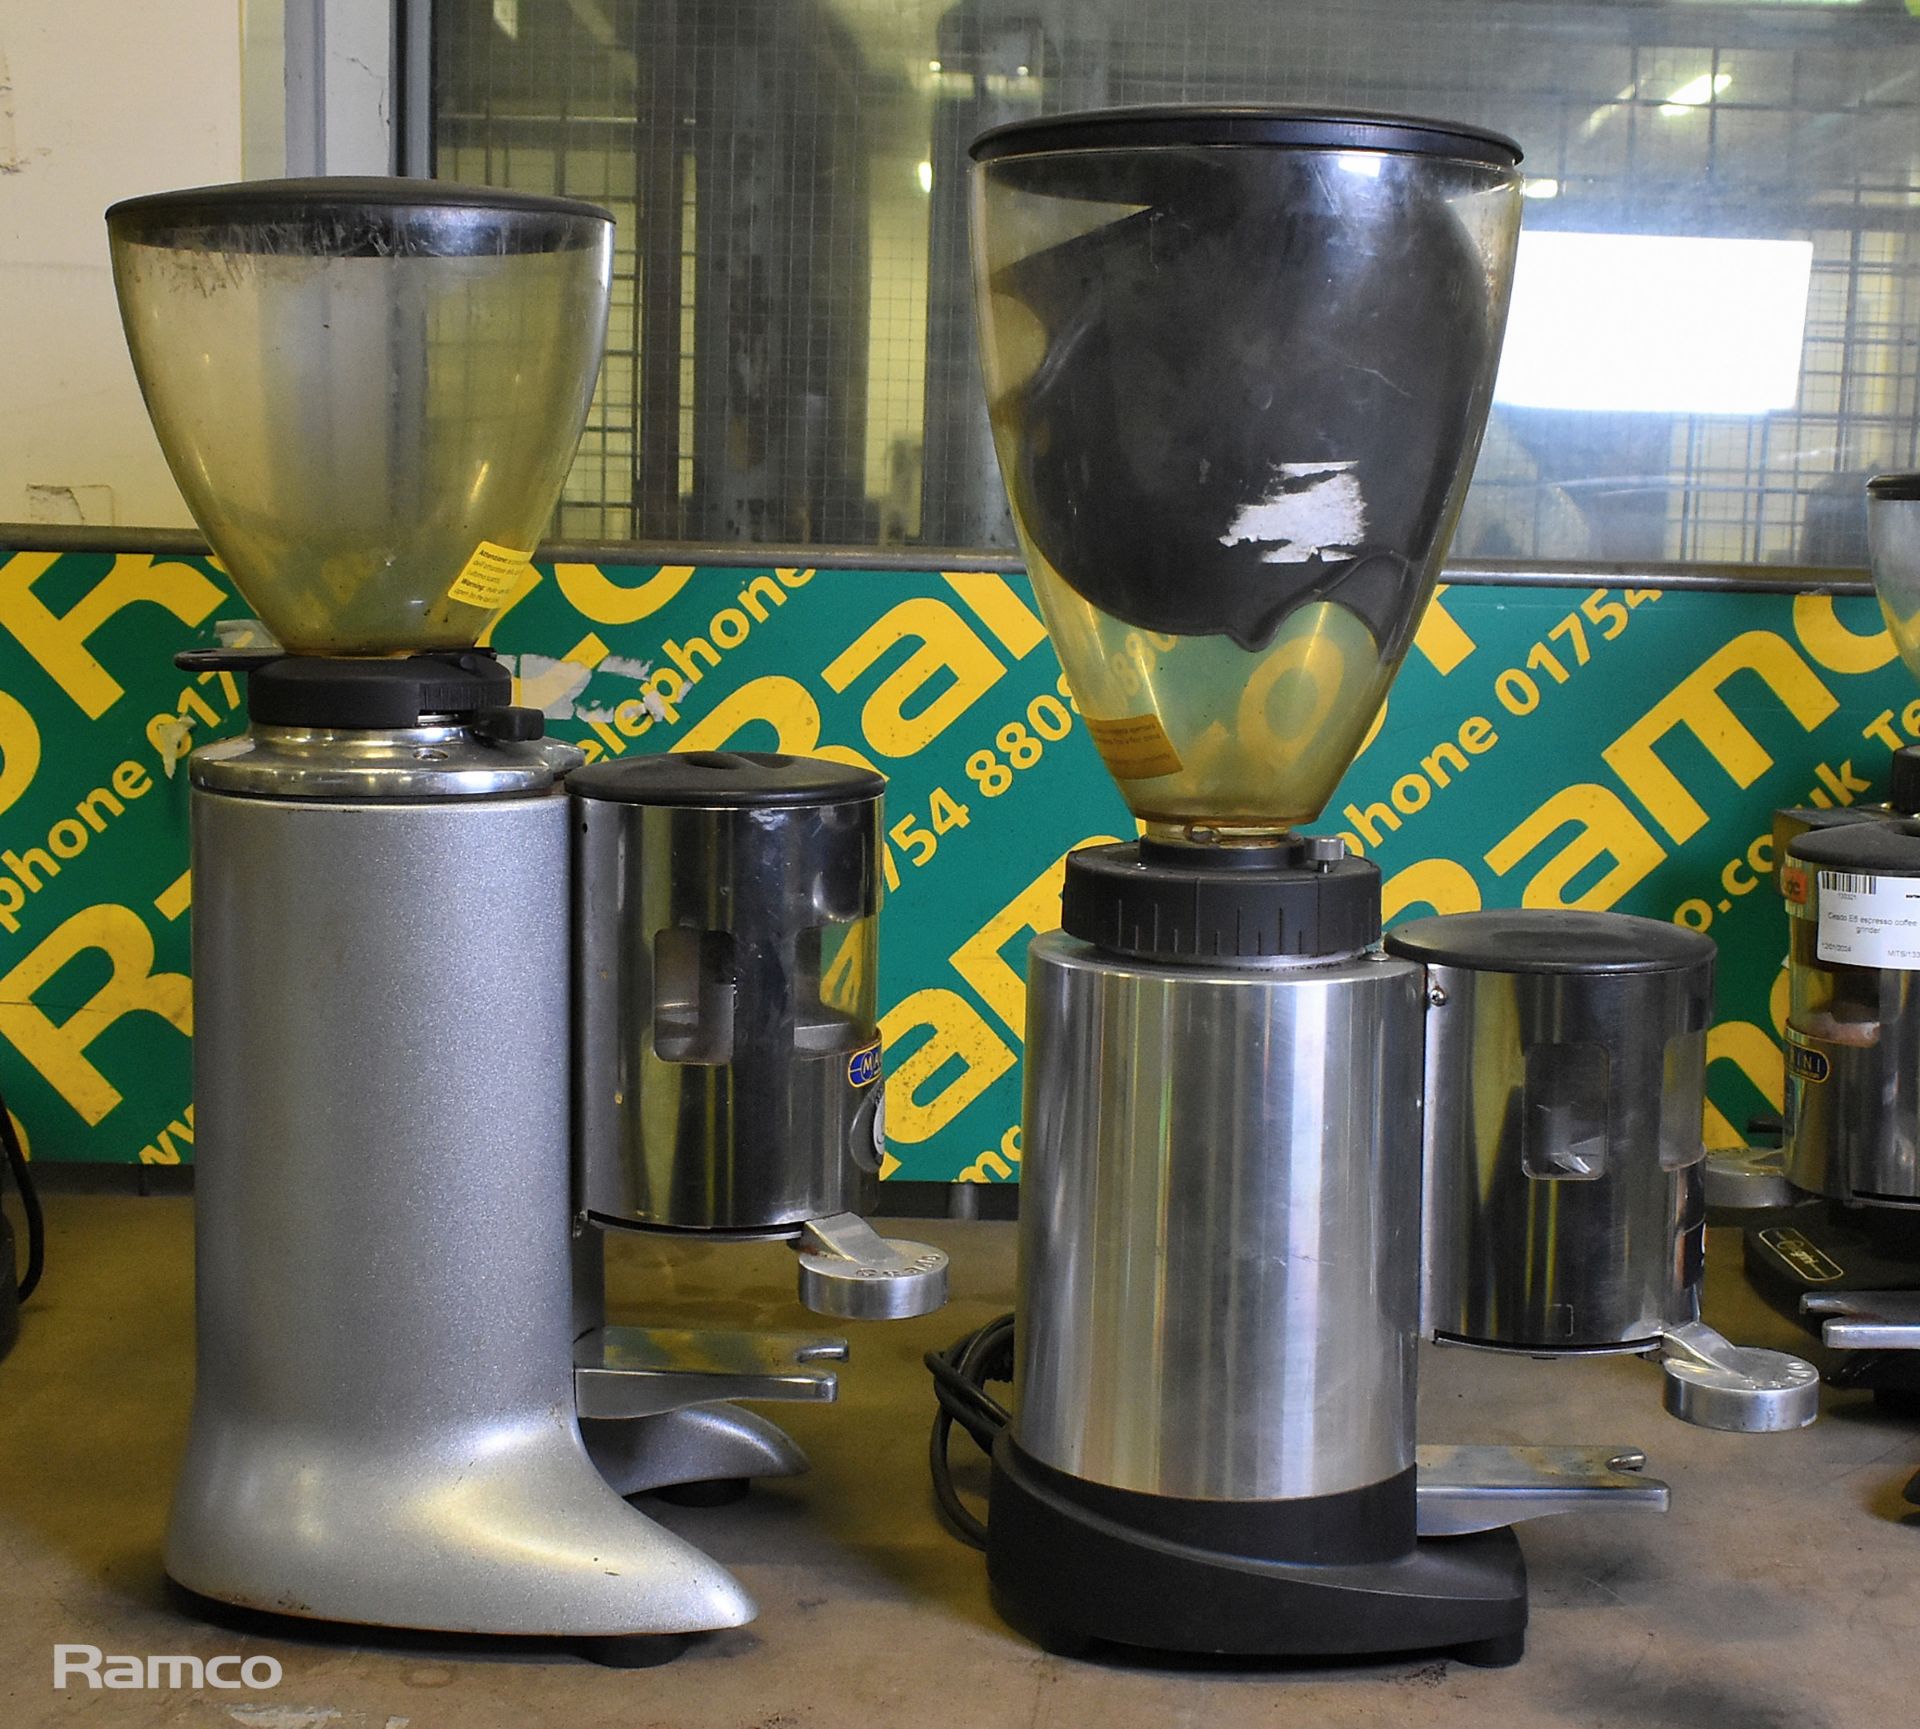 Ceado E6X espresso coffee grinder, Ceado E7 espresso coffee grinder - Image 2 of 6